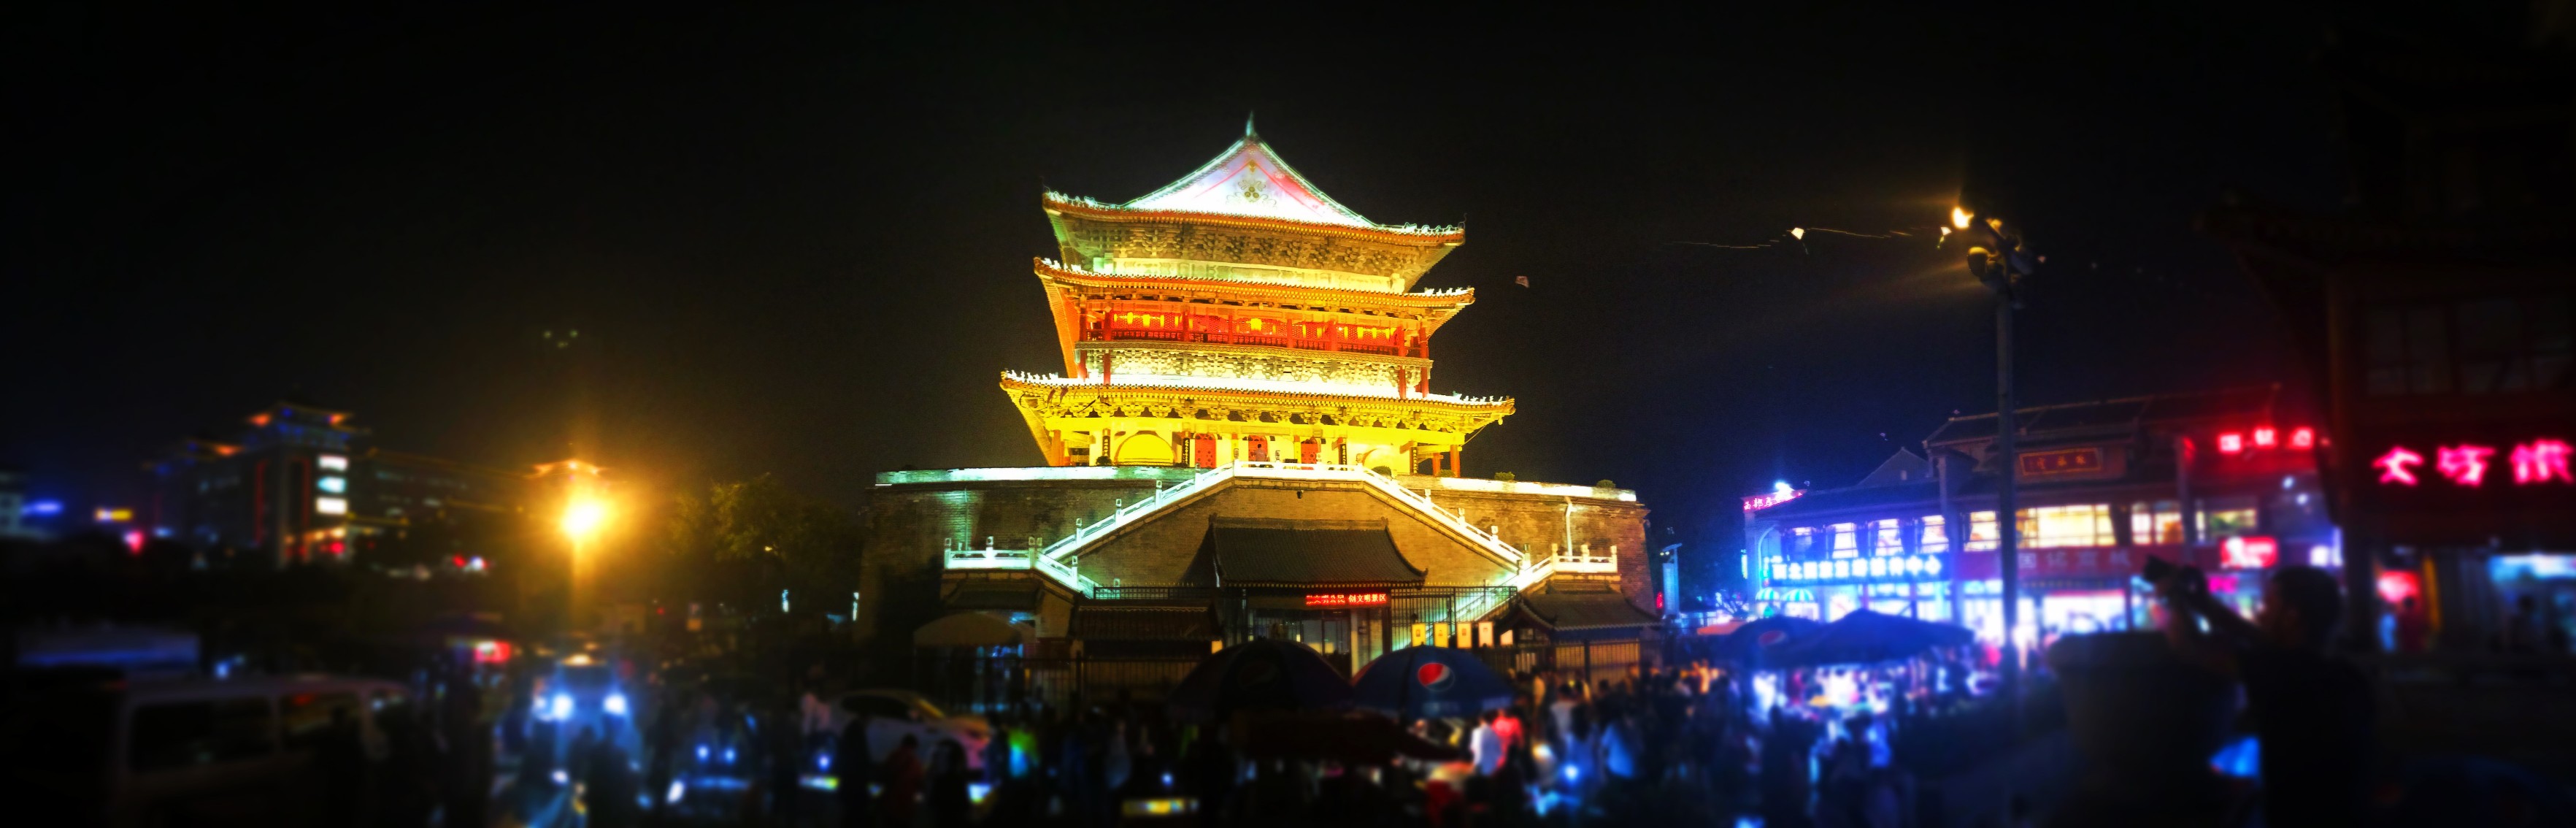 Bell Tower at Muslim Quarter in Xian at night panoramic